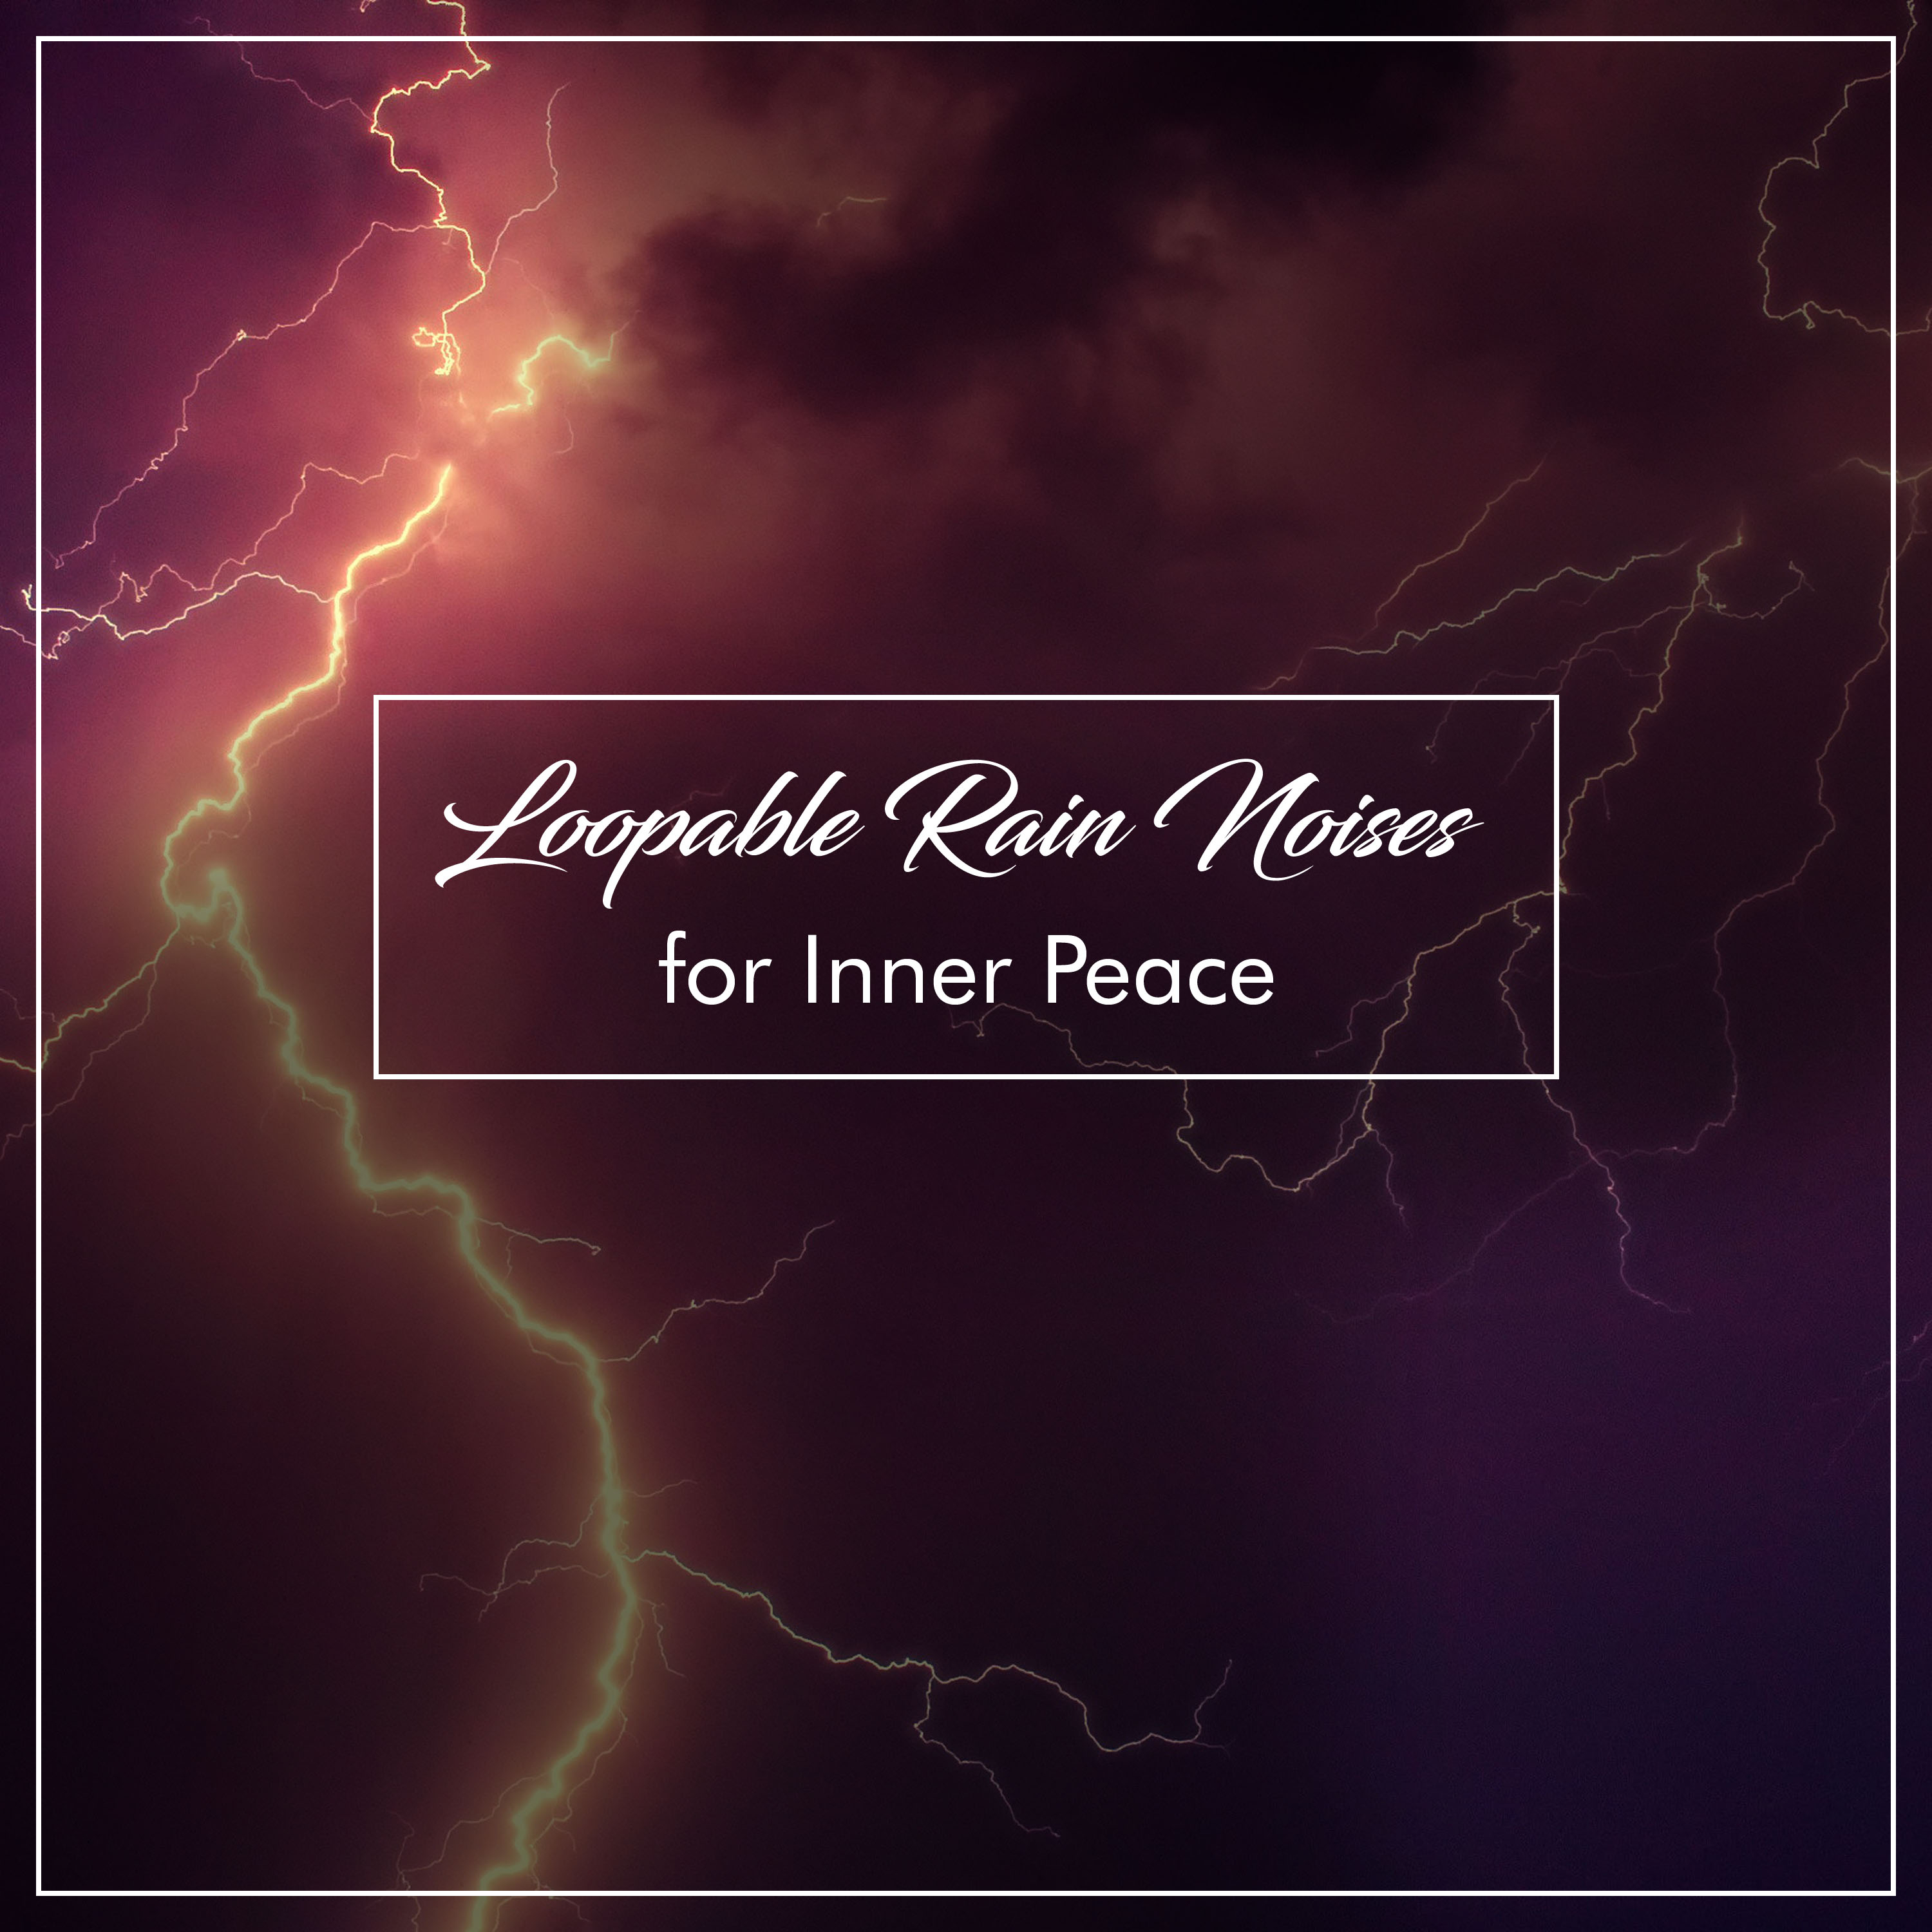 #21 Loopable Rain Noises for Inner Peace